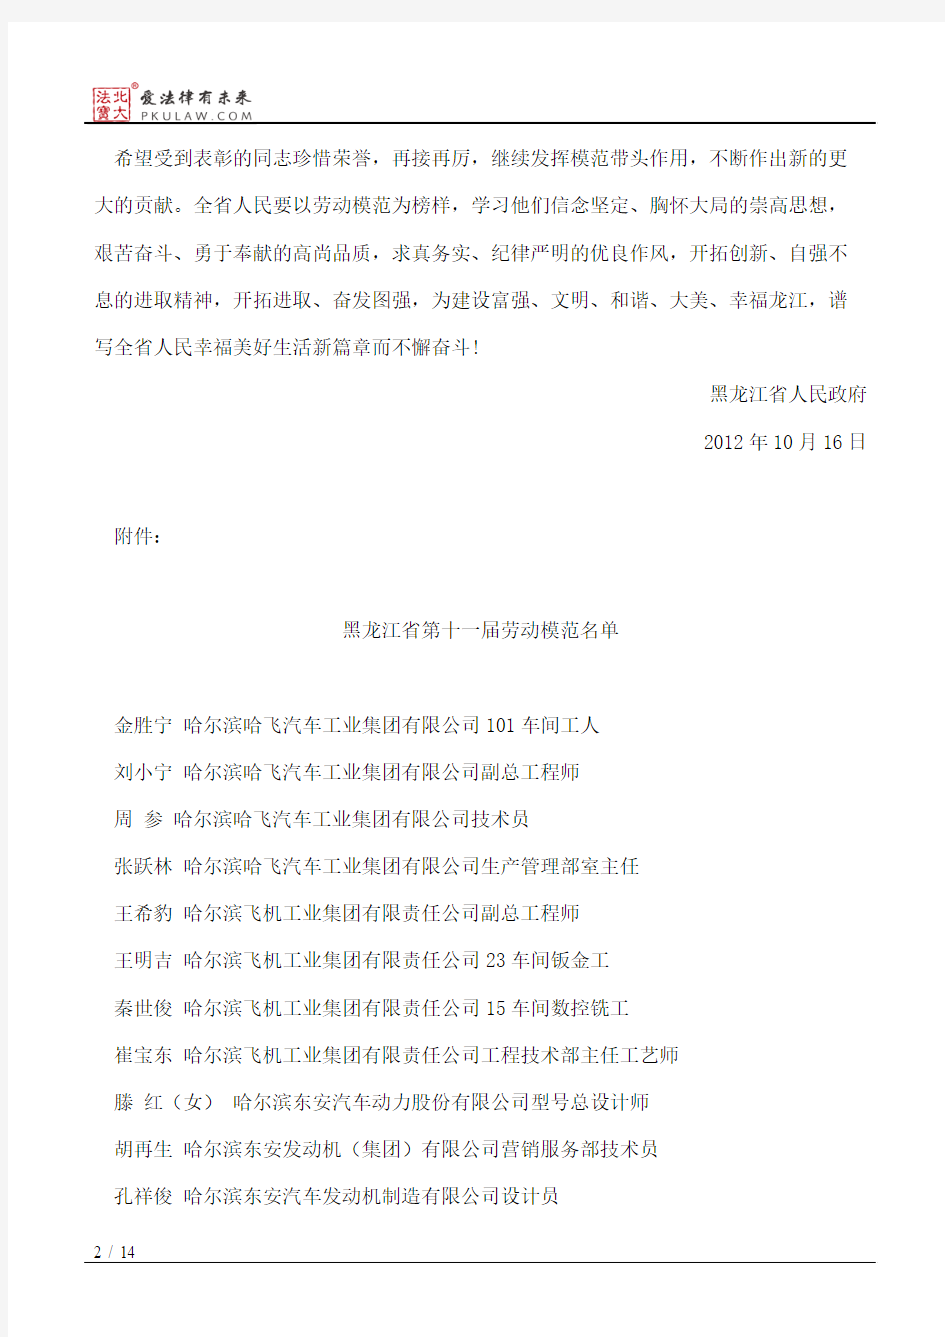 黑龙江省人民政府关于表彰省劳动模范的决定